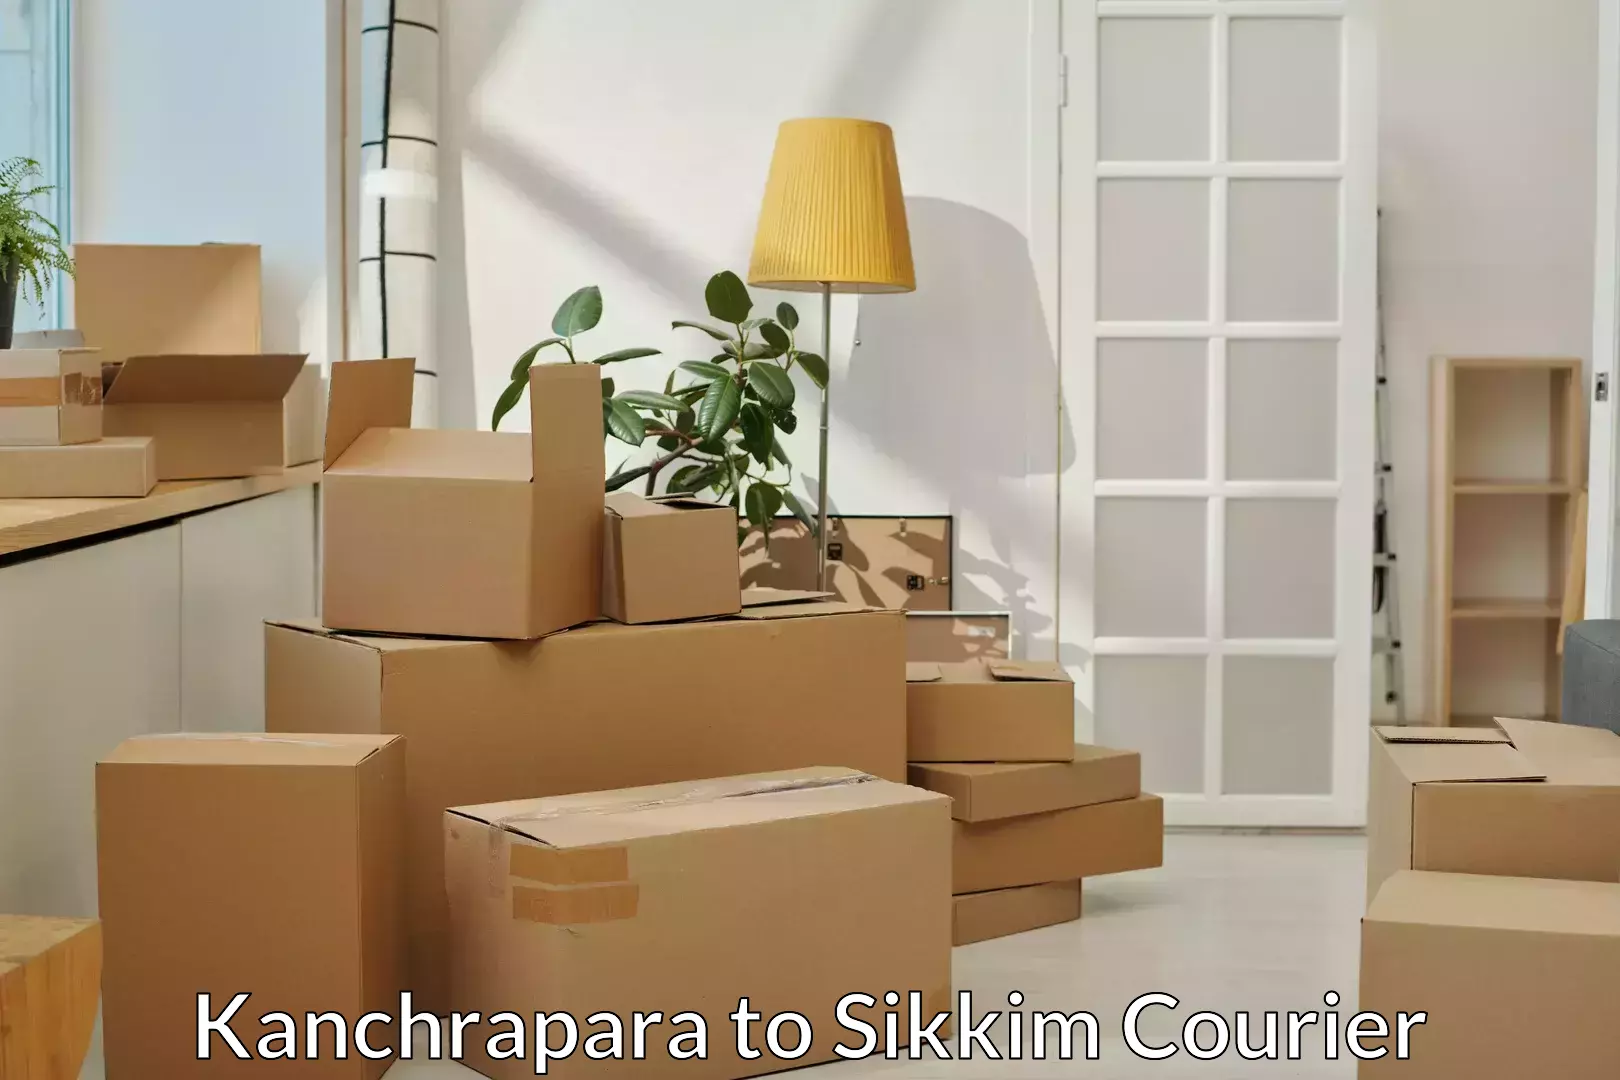 Full-service furniture transport Kanchrapara to Jorethang